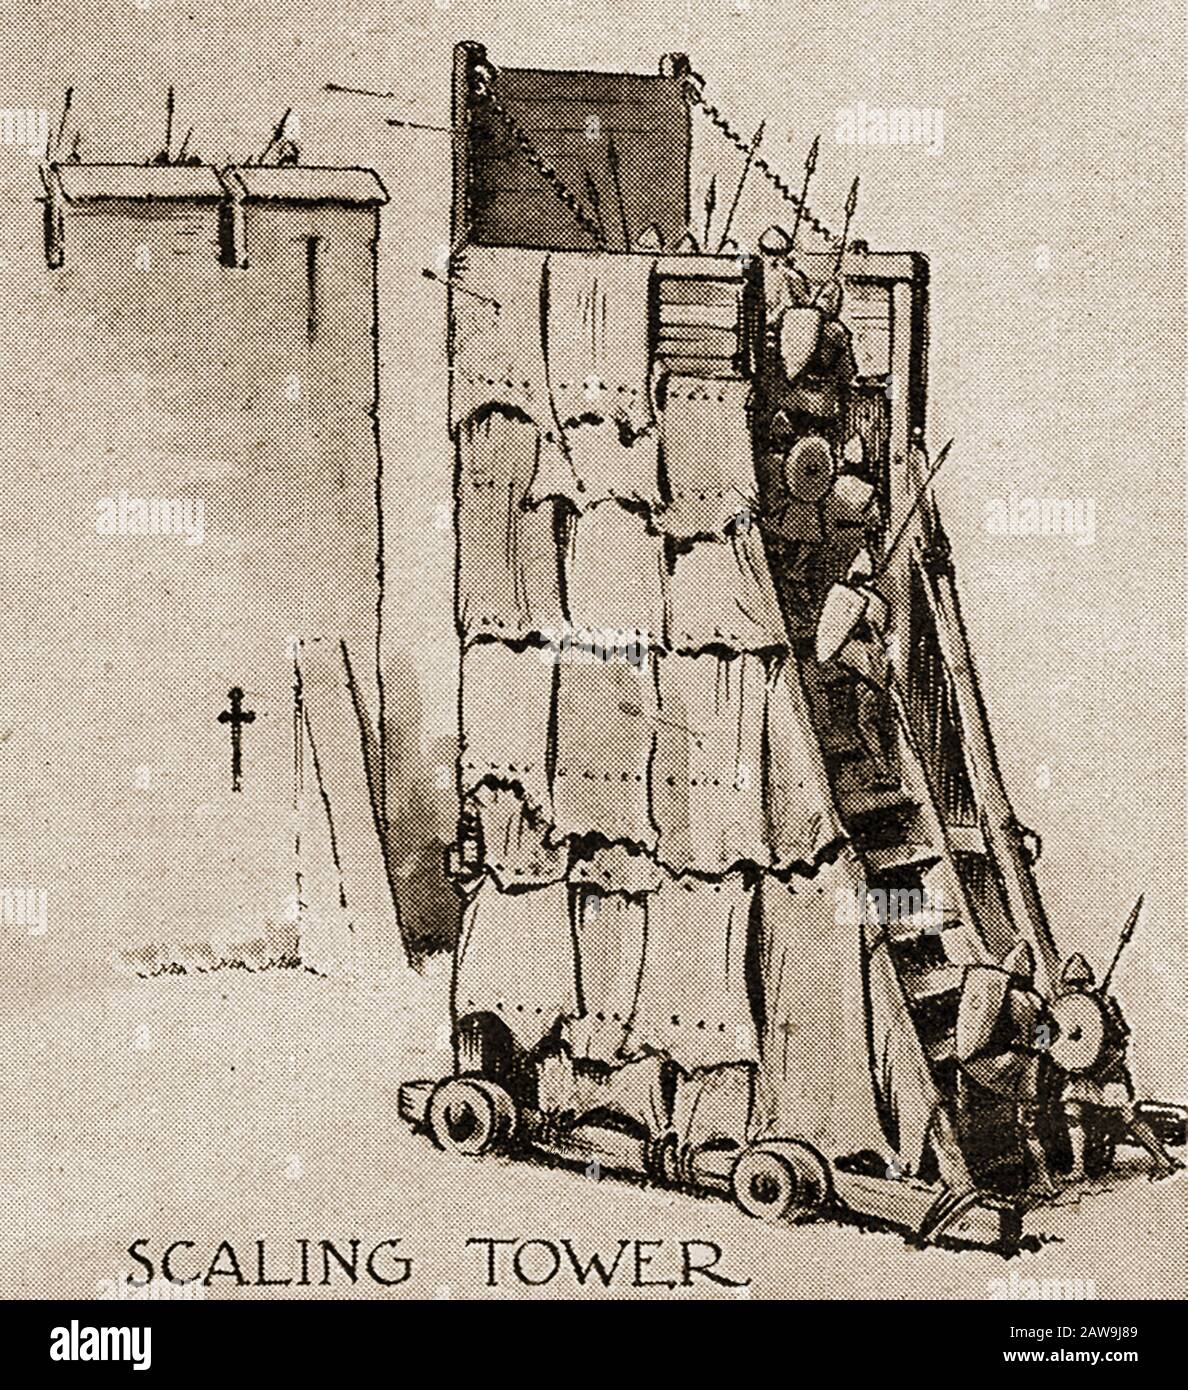 Eine Illustration aus den vierziger Jahren, die historische Kampfwaffen zeigt - Scaling Tower. Zum Skalieren von Wänden und Türmen Stockfoto